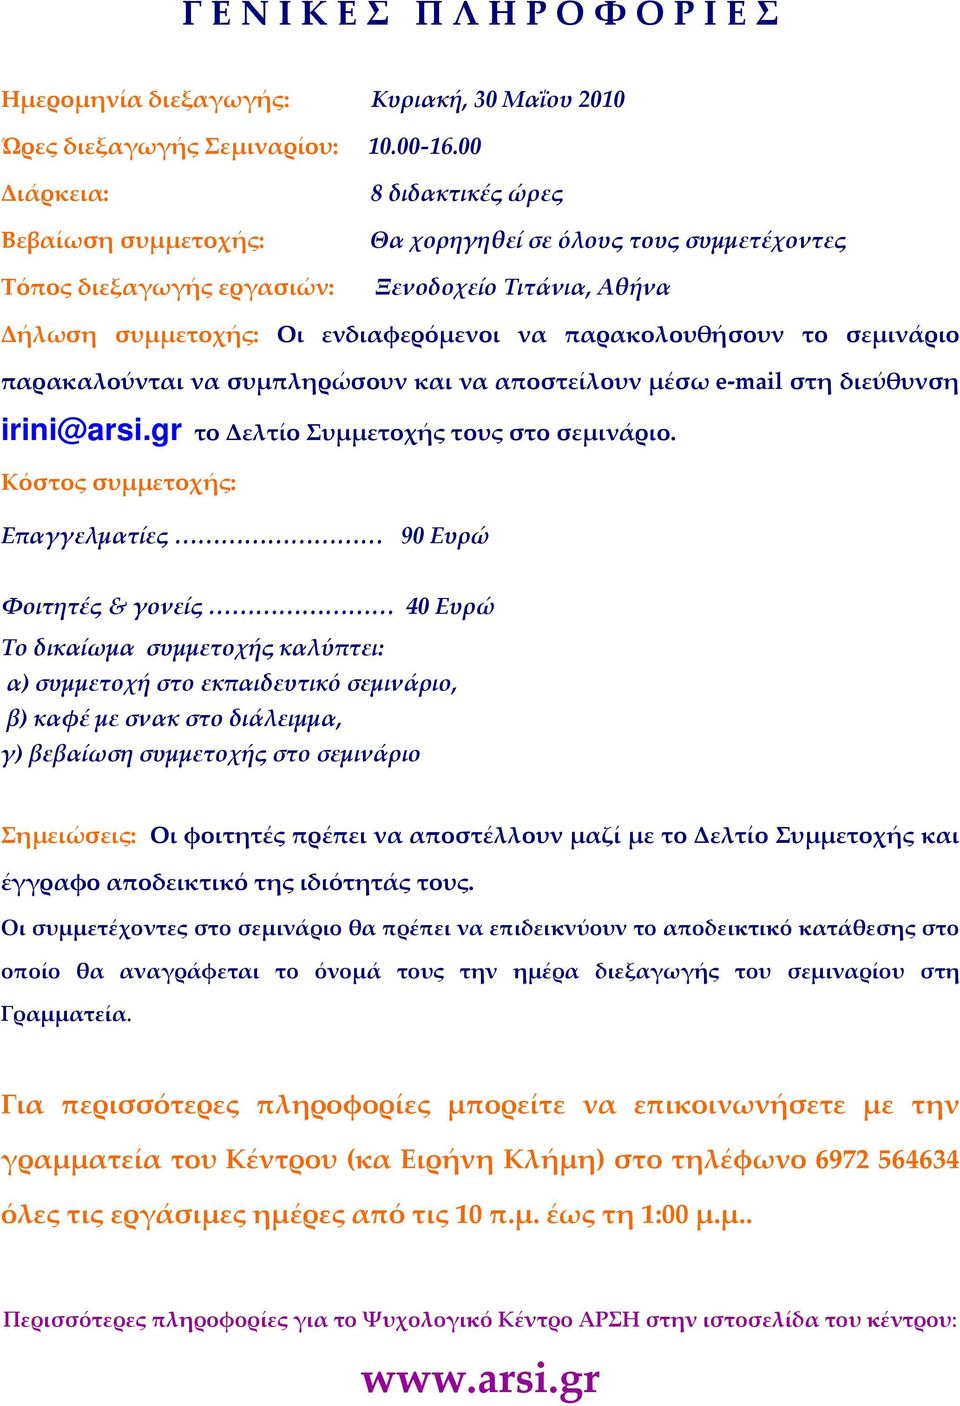 παρακολουθήσουν το σεμινάριο παρακαλούνται να συμπληρώσουν και να αποστείλουν μέσω e-mail στη διεύθυνση irini@arsi.gr το Δελτίο Συμμετοχής τους στο σεμινάριο.